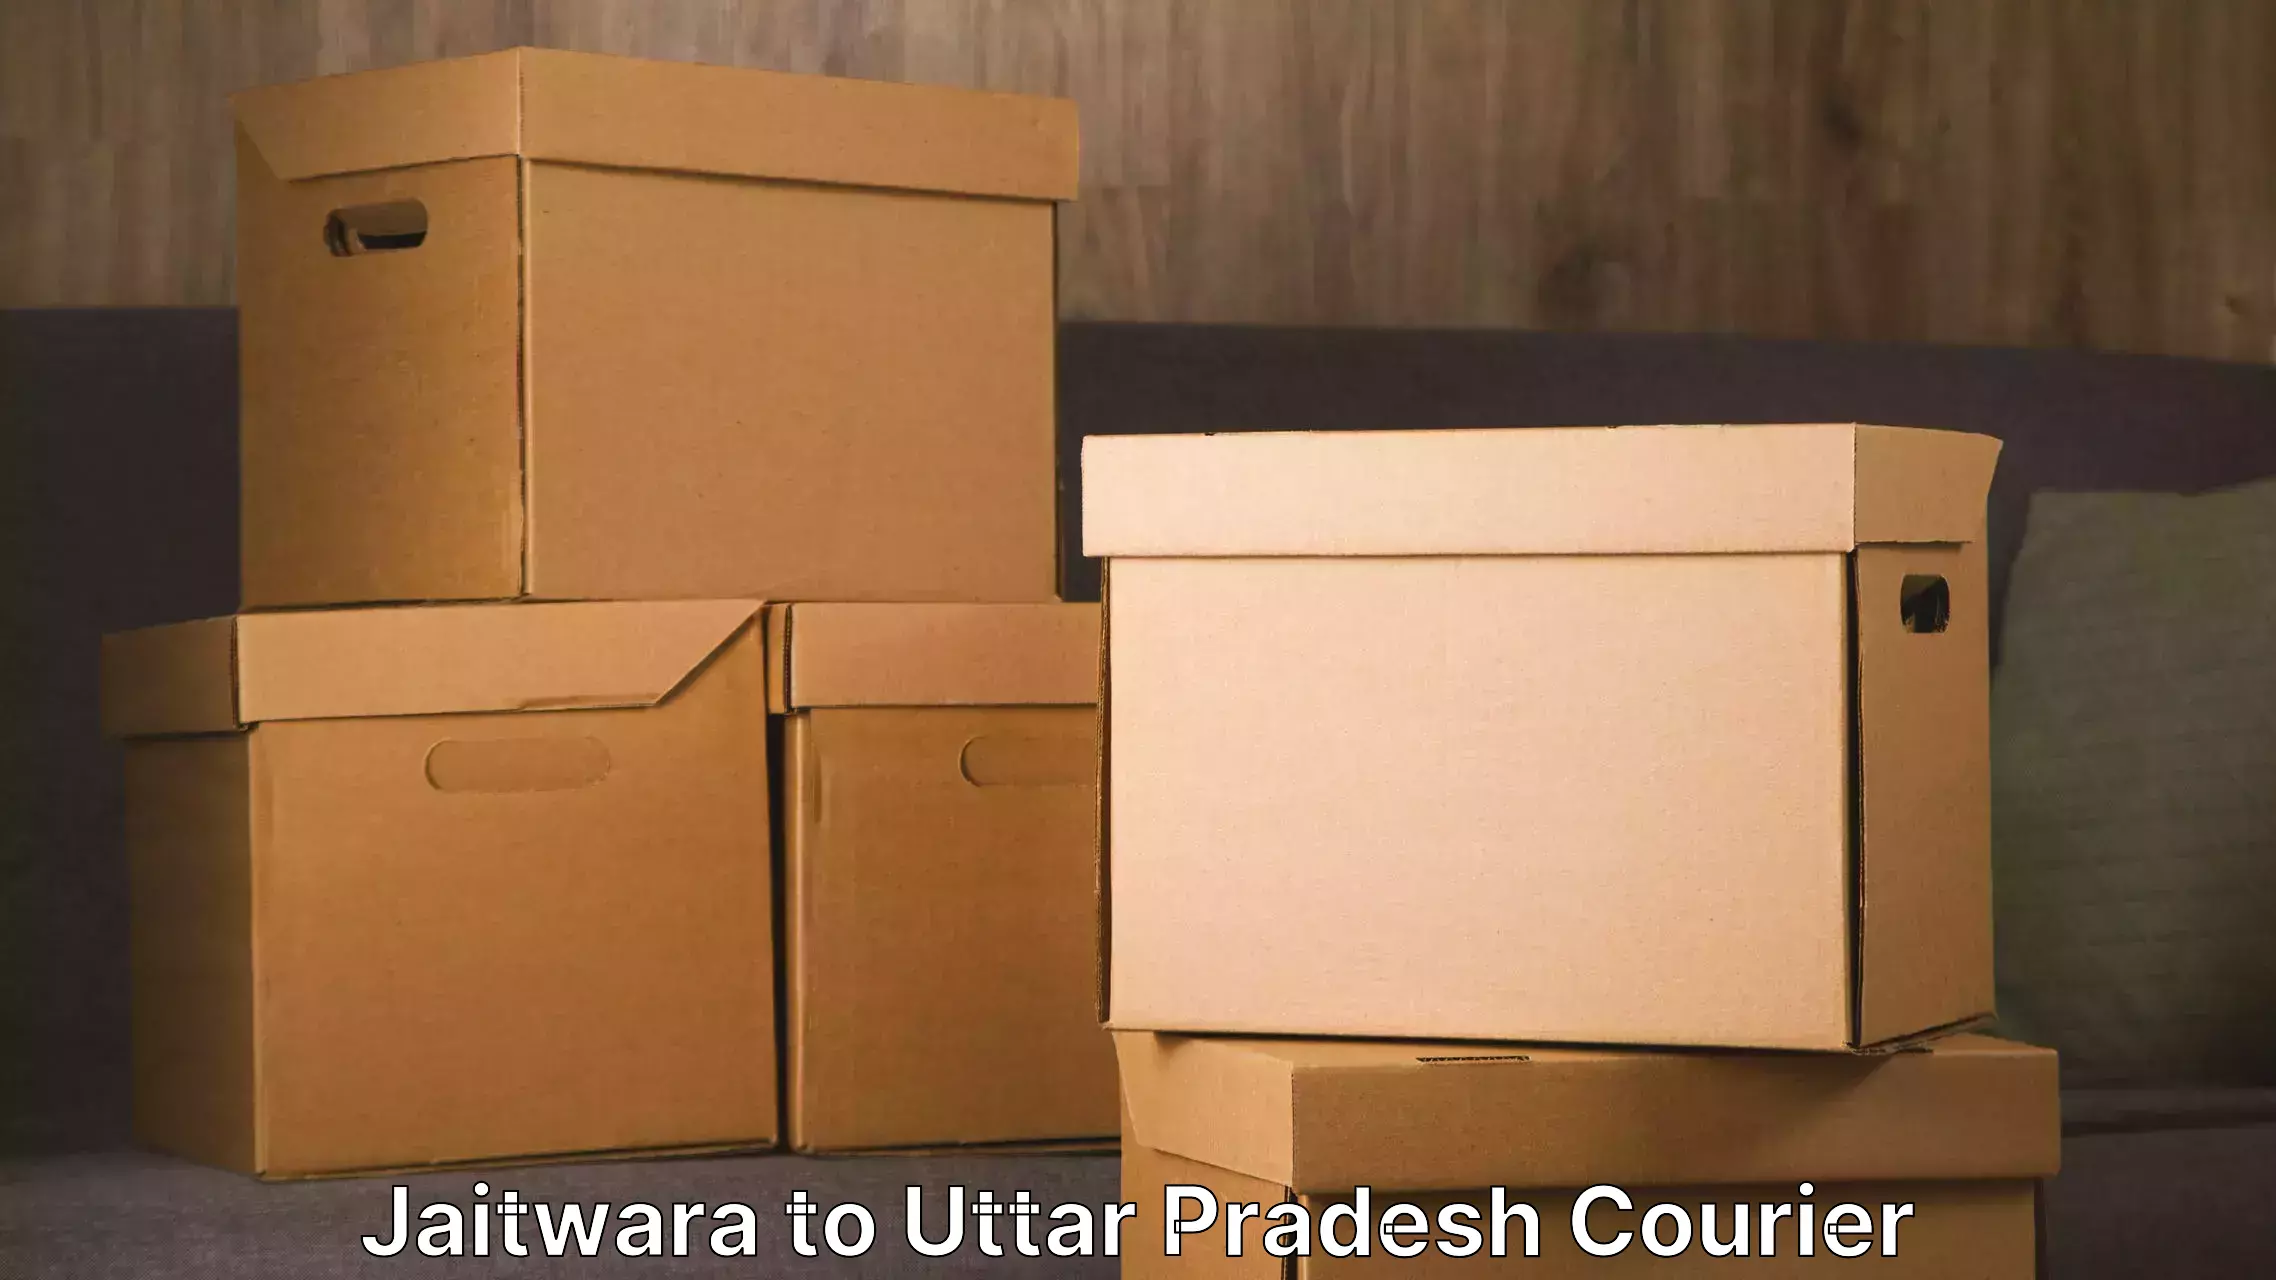 Furniture transport and storage Jaitwara to Agra